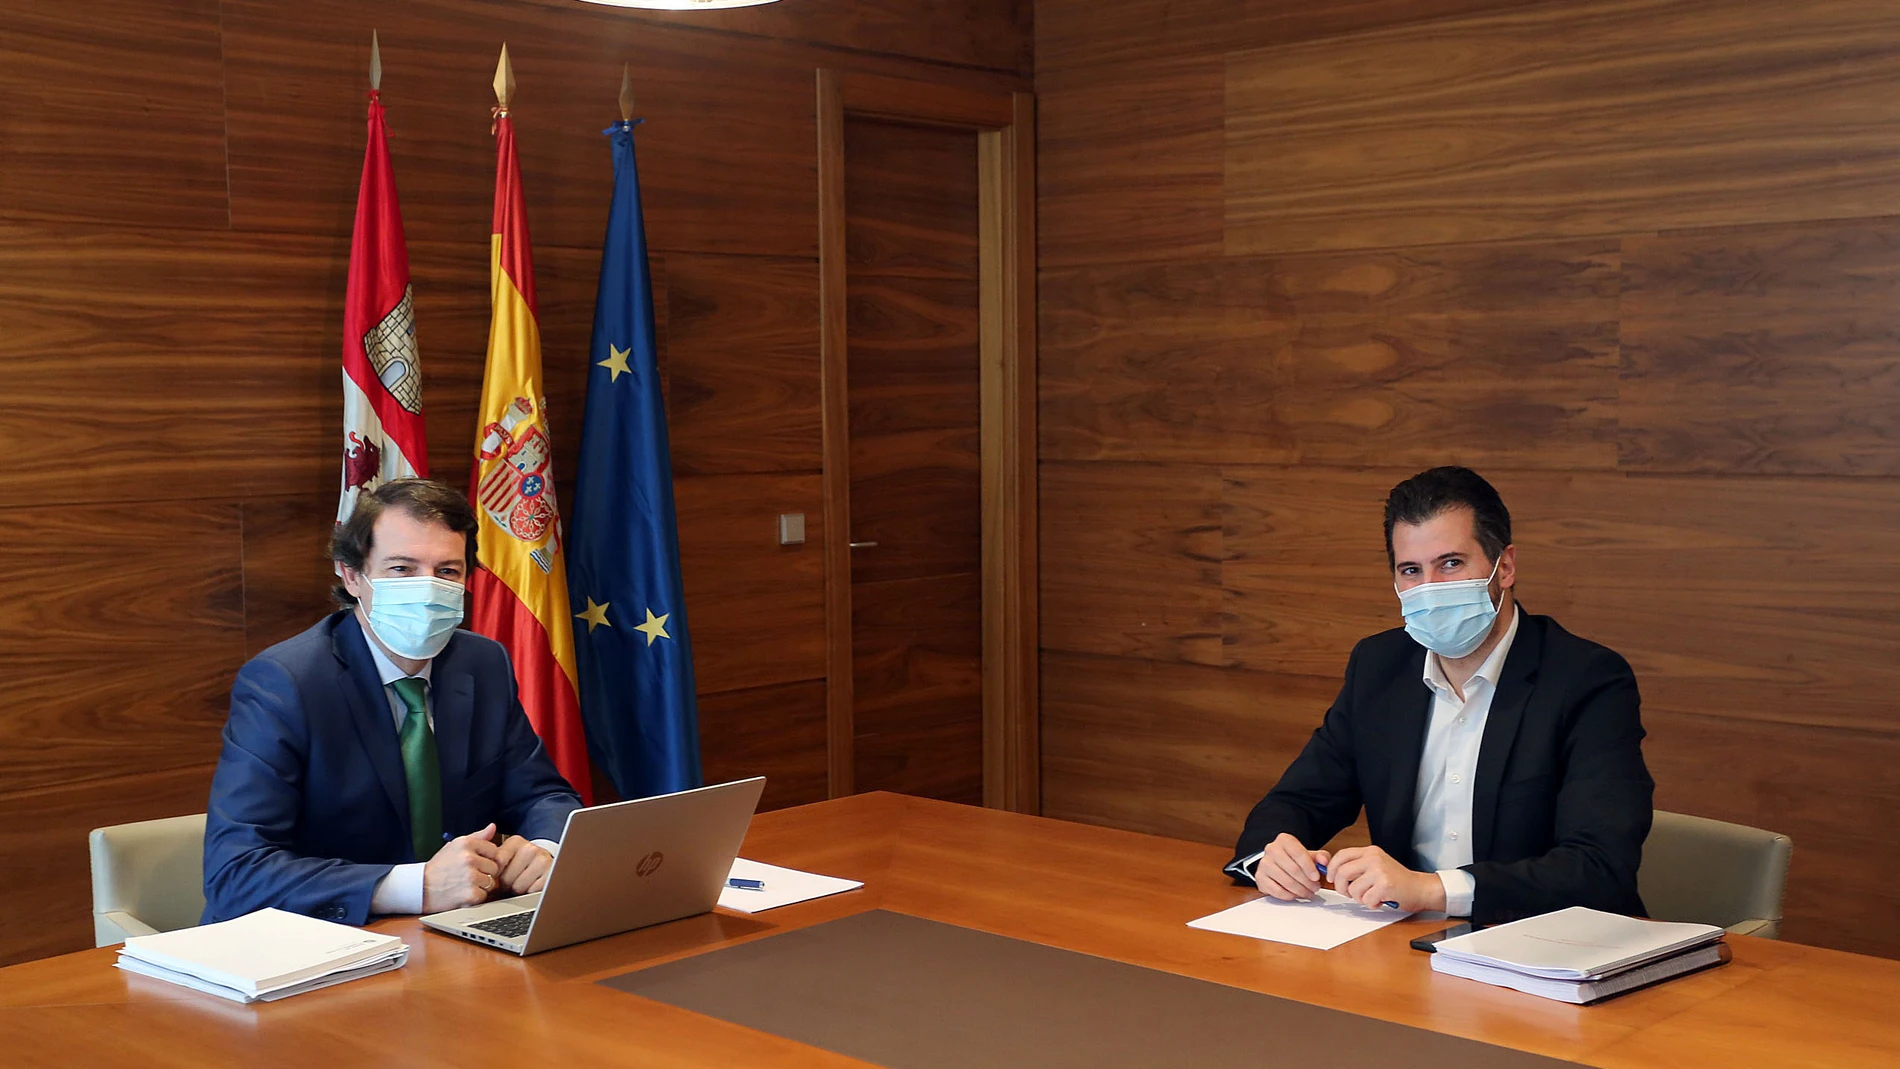 El presidente de la Junta de Castilla y León, Alfonso Fernández Mañueco, se reúne con el portavoz del Grupo Socialista, Luis Tudanca, como parte de la ronda de reuniones con los grupos parlamentarios para negociar una posición común en relación al reparto de fondos europeos